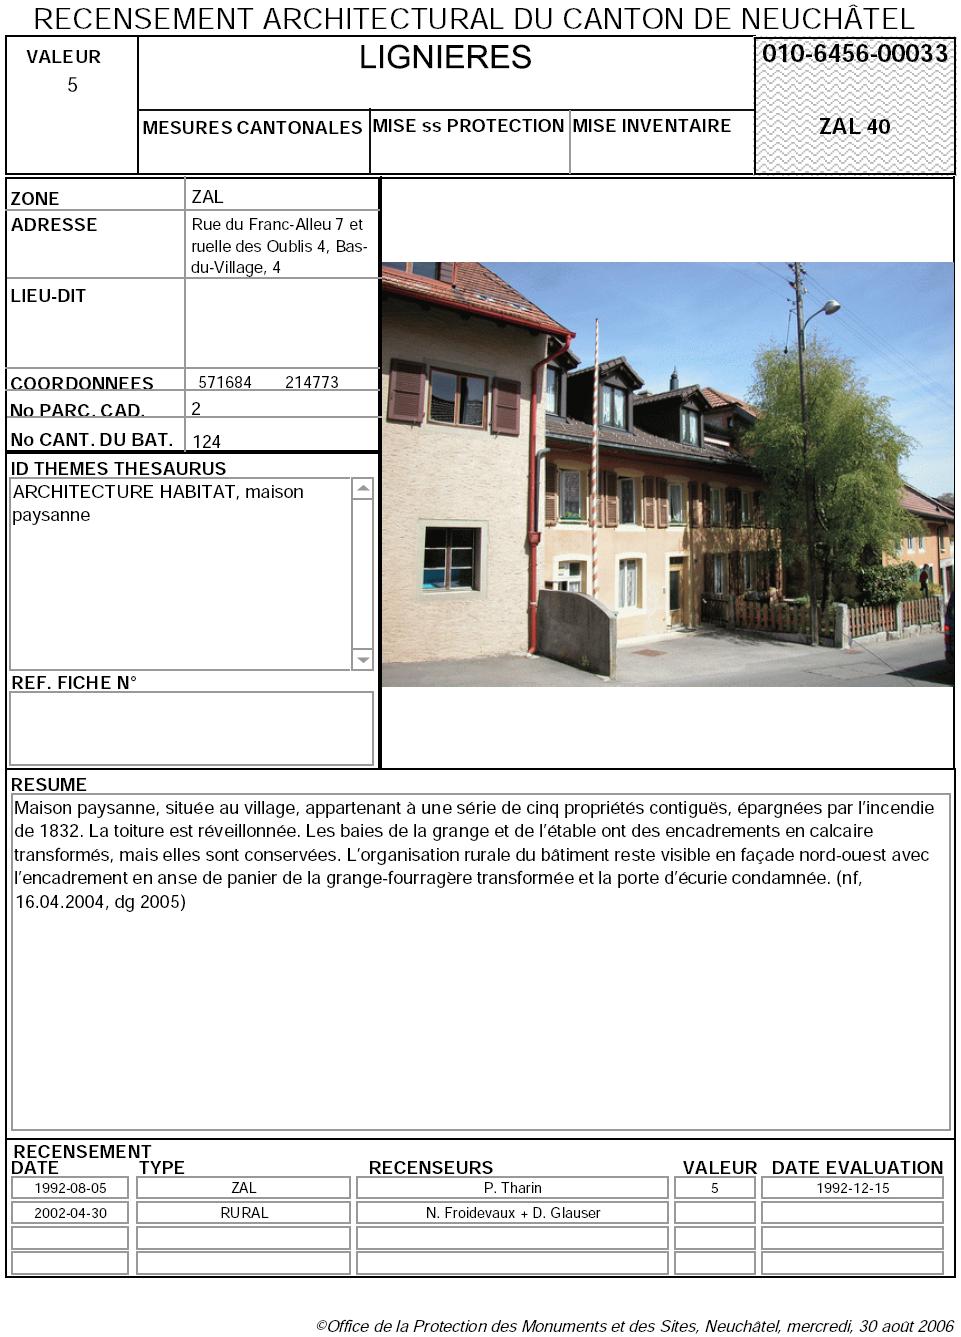 Recensement architectural du canton de Neuchâtel: Fiche 010-6456-00033